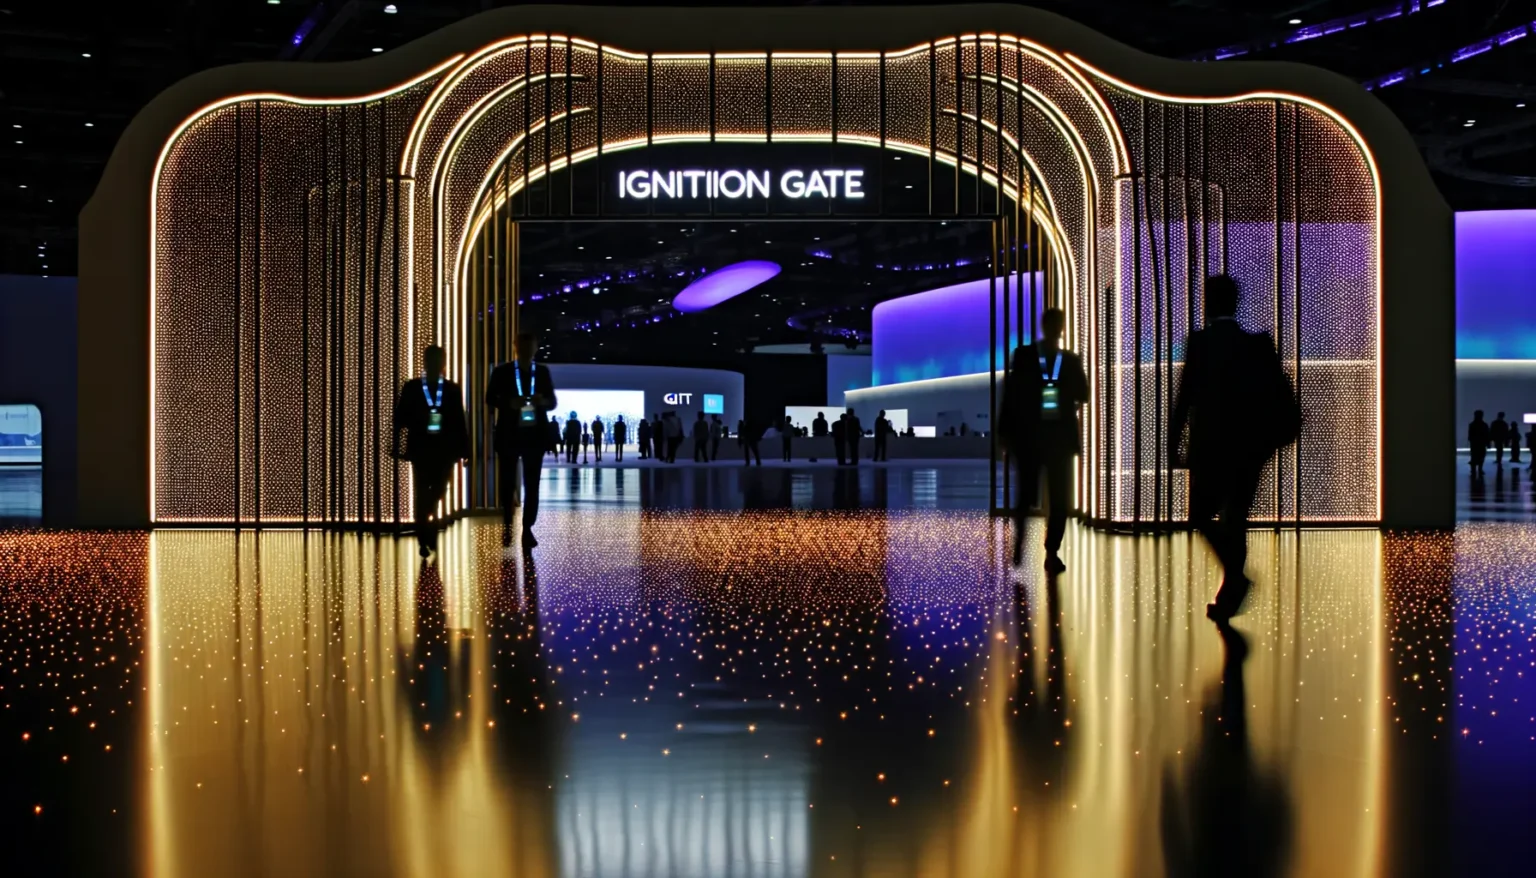 Eine futuristisch beleuchtete Eingangshalle mit dem Schriftzug "IGNITION GATE". Viele kleine Lichter spiegeln sich auf dem glänzenden Boden und erzeugen den Eindruck eines Sternenhimmels. Silhouetten von Menschen durchschreiten das Tor, was der Szene eine dynamische und lebendige Atmosphäre verleiht.